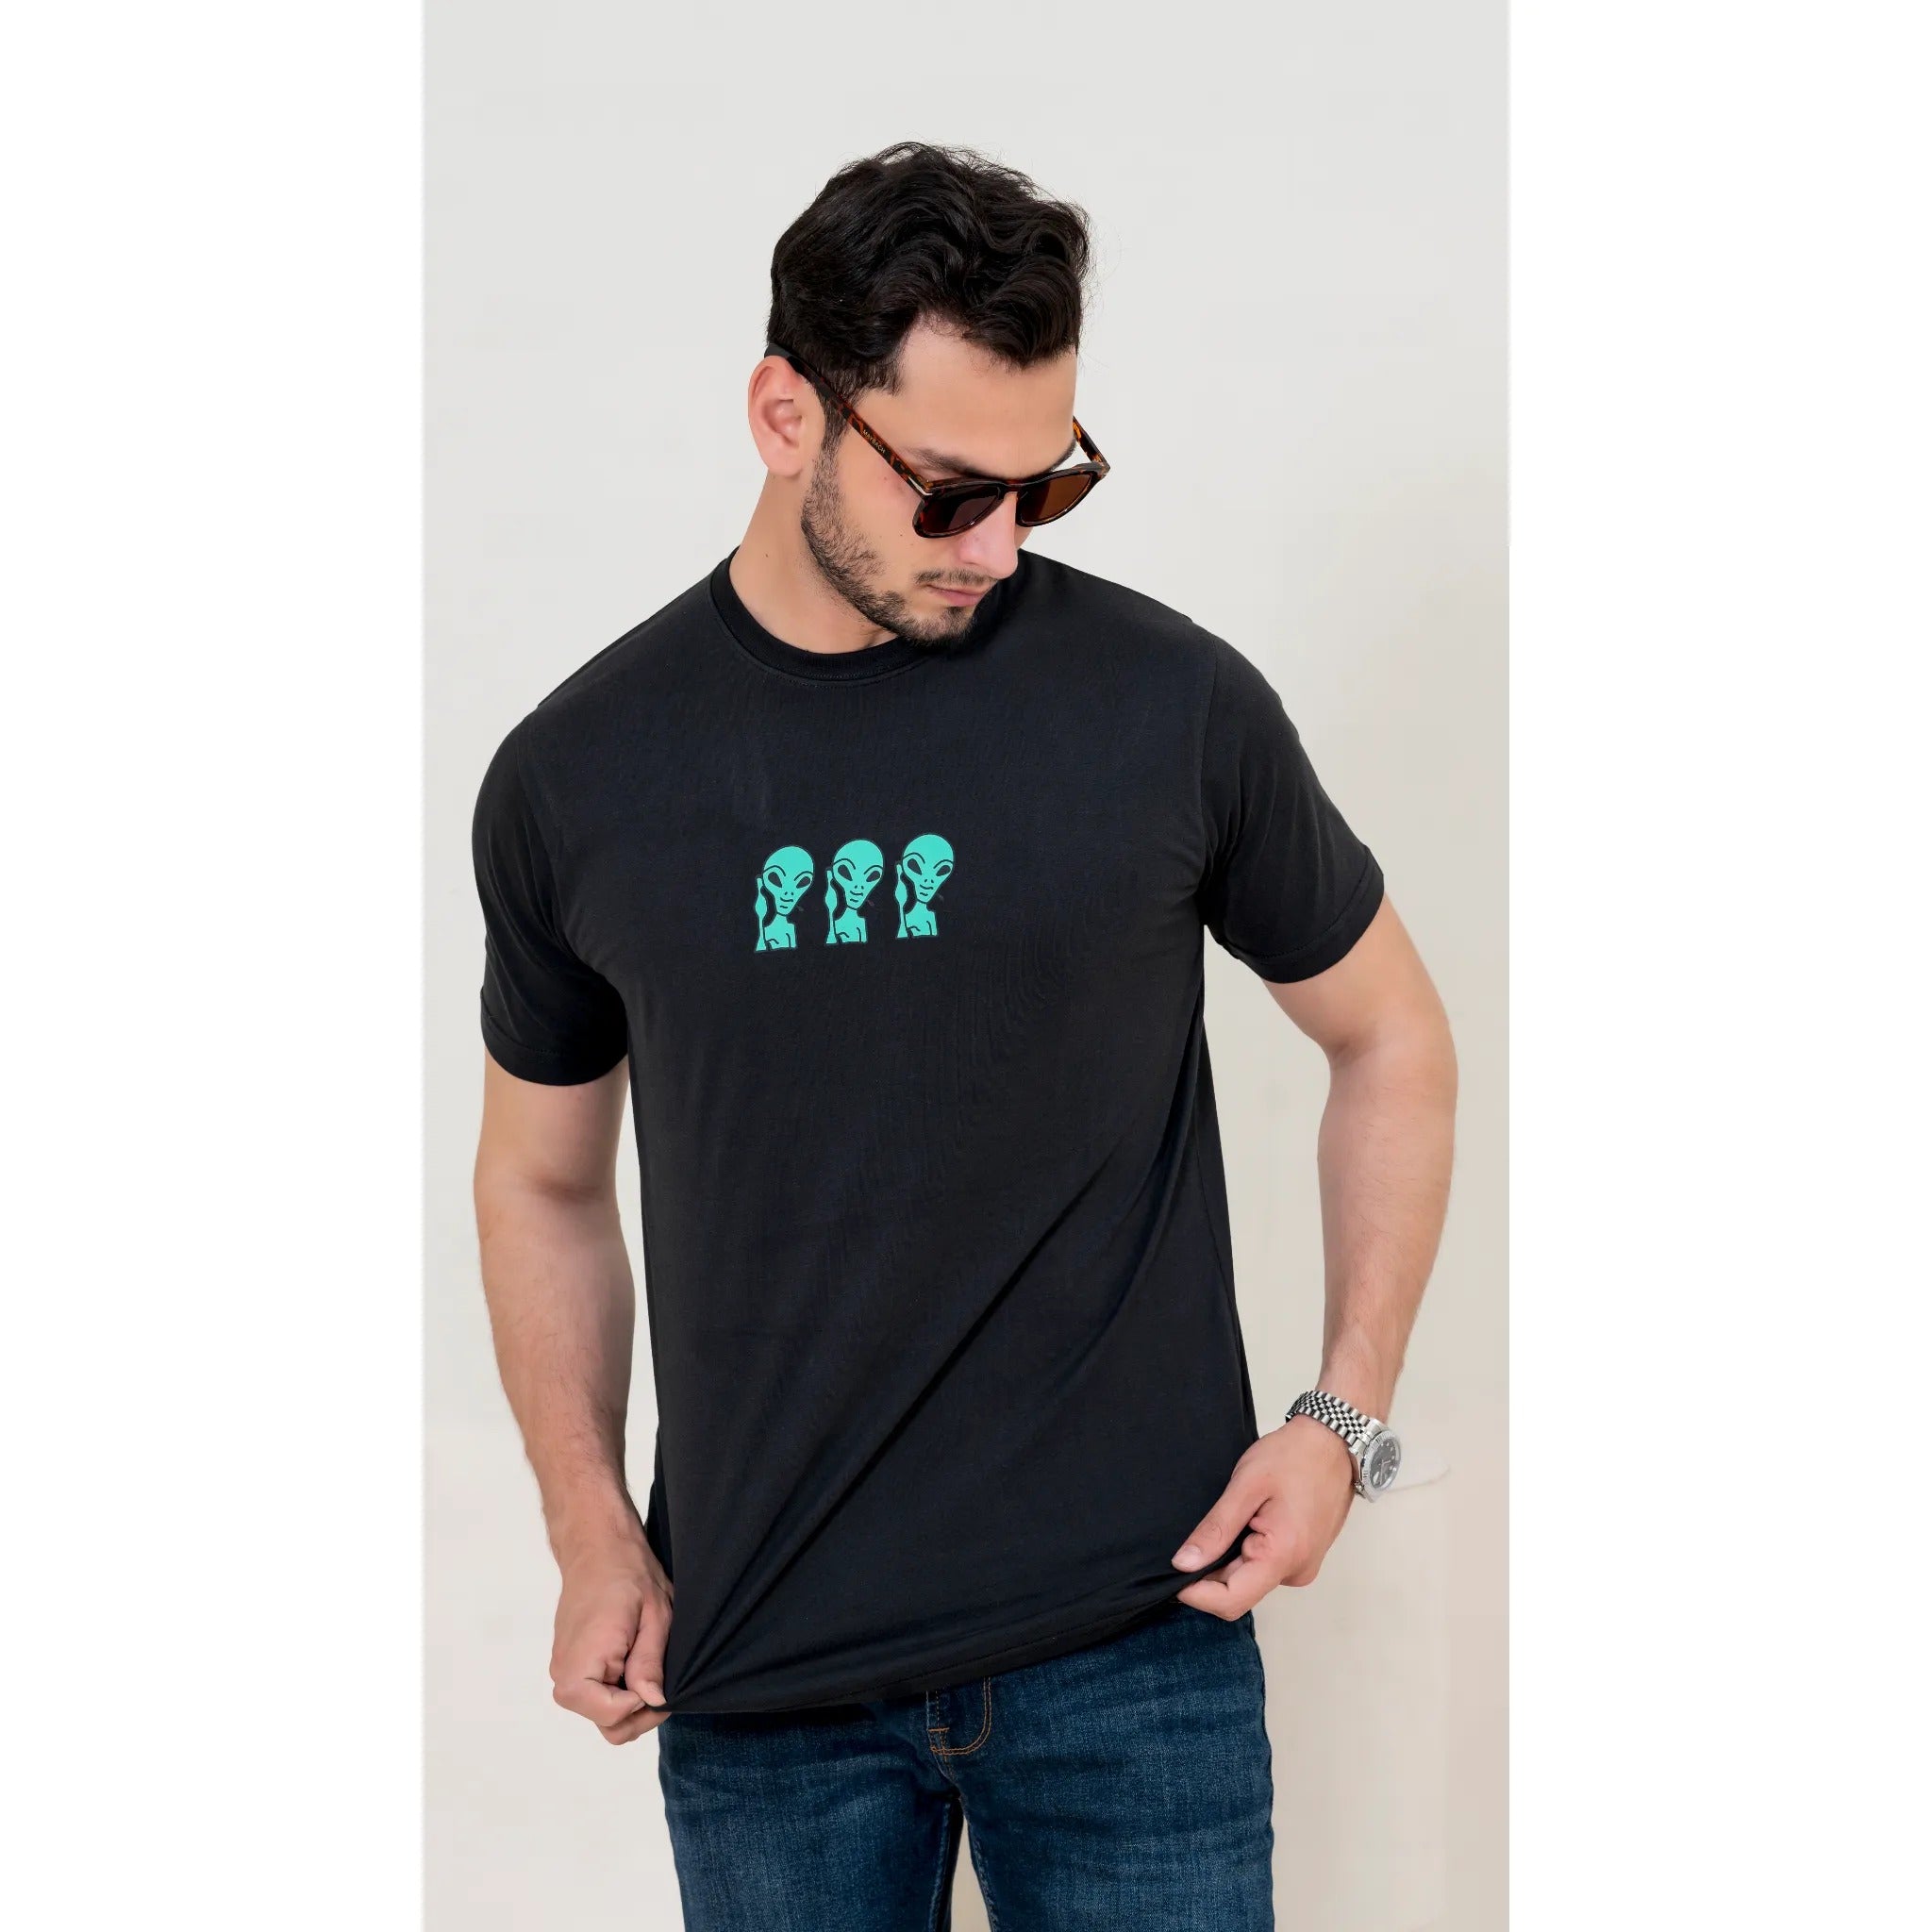 X-Fit Aliens Graphic T-Shirt For Men-2362